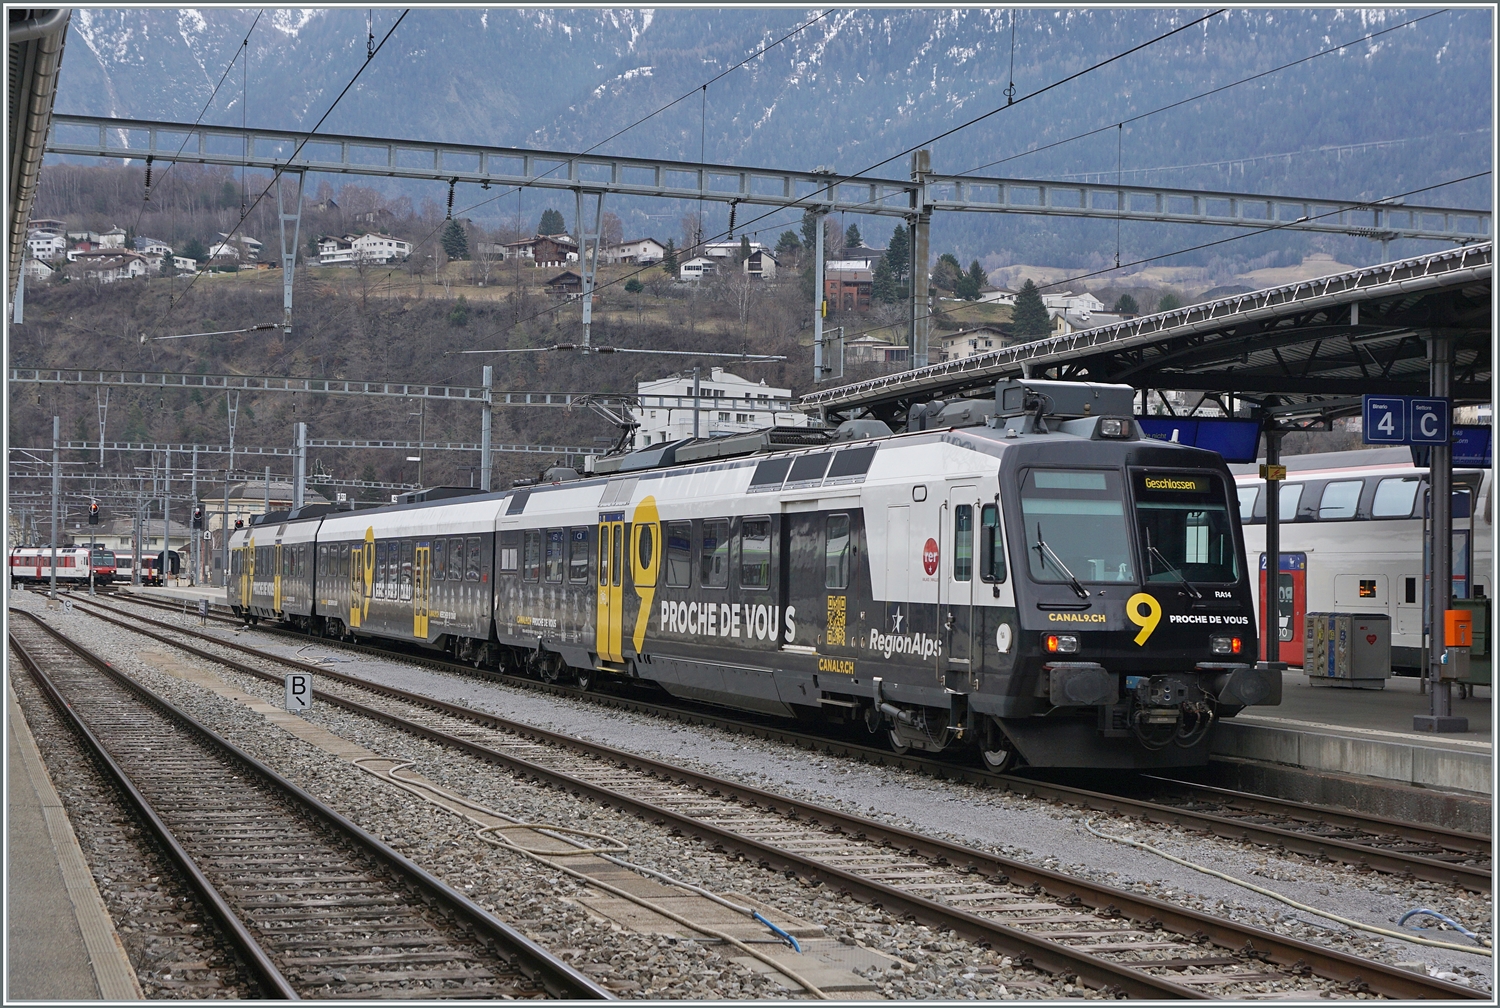 Eigentlich eine  Pflicht-Aufnahme : der Region Alps Domino RBDe 560 414 mit Kanal 9 Werbung vermag nicht sonderlich zu begeistern. Hier wird der Triebwagen nach der Ankunft in Brig in einen anderen Bahnhofsteil rangiert.

2. Feb. 2024